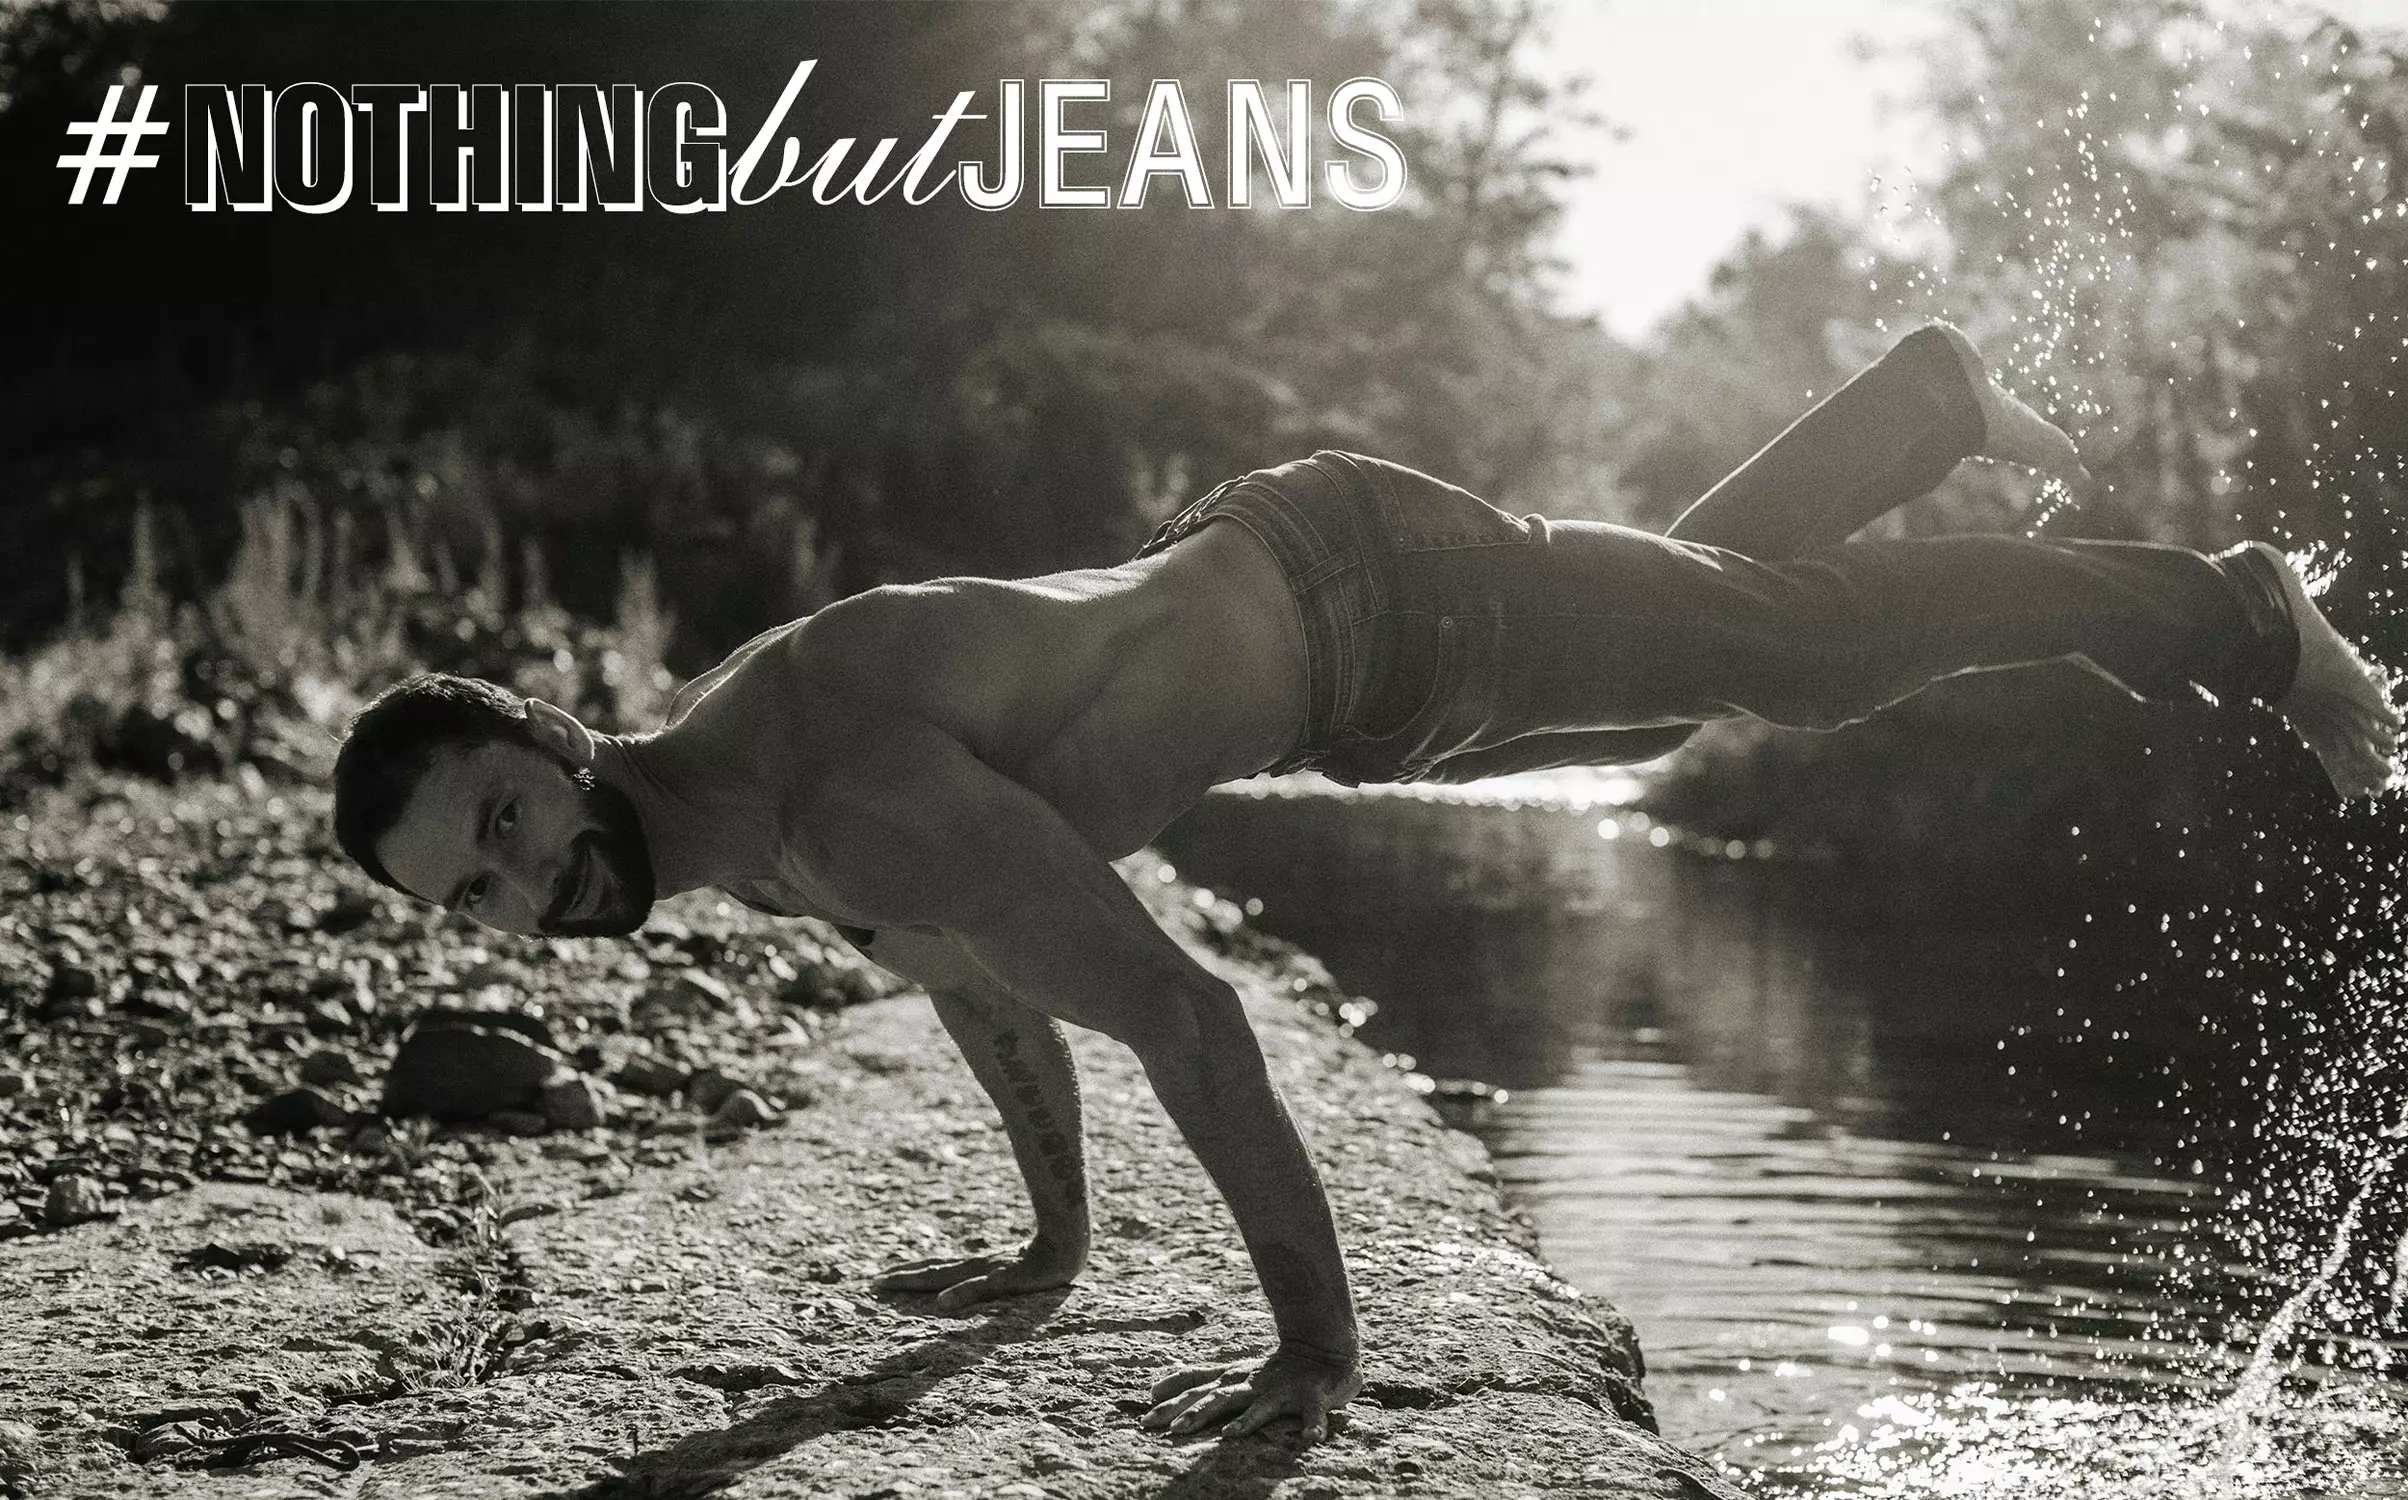 Ieu Mikhail Fomin dina #NothingButJeans ku Serge Lee